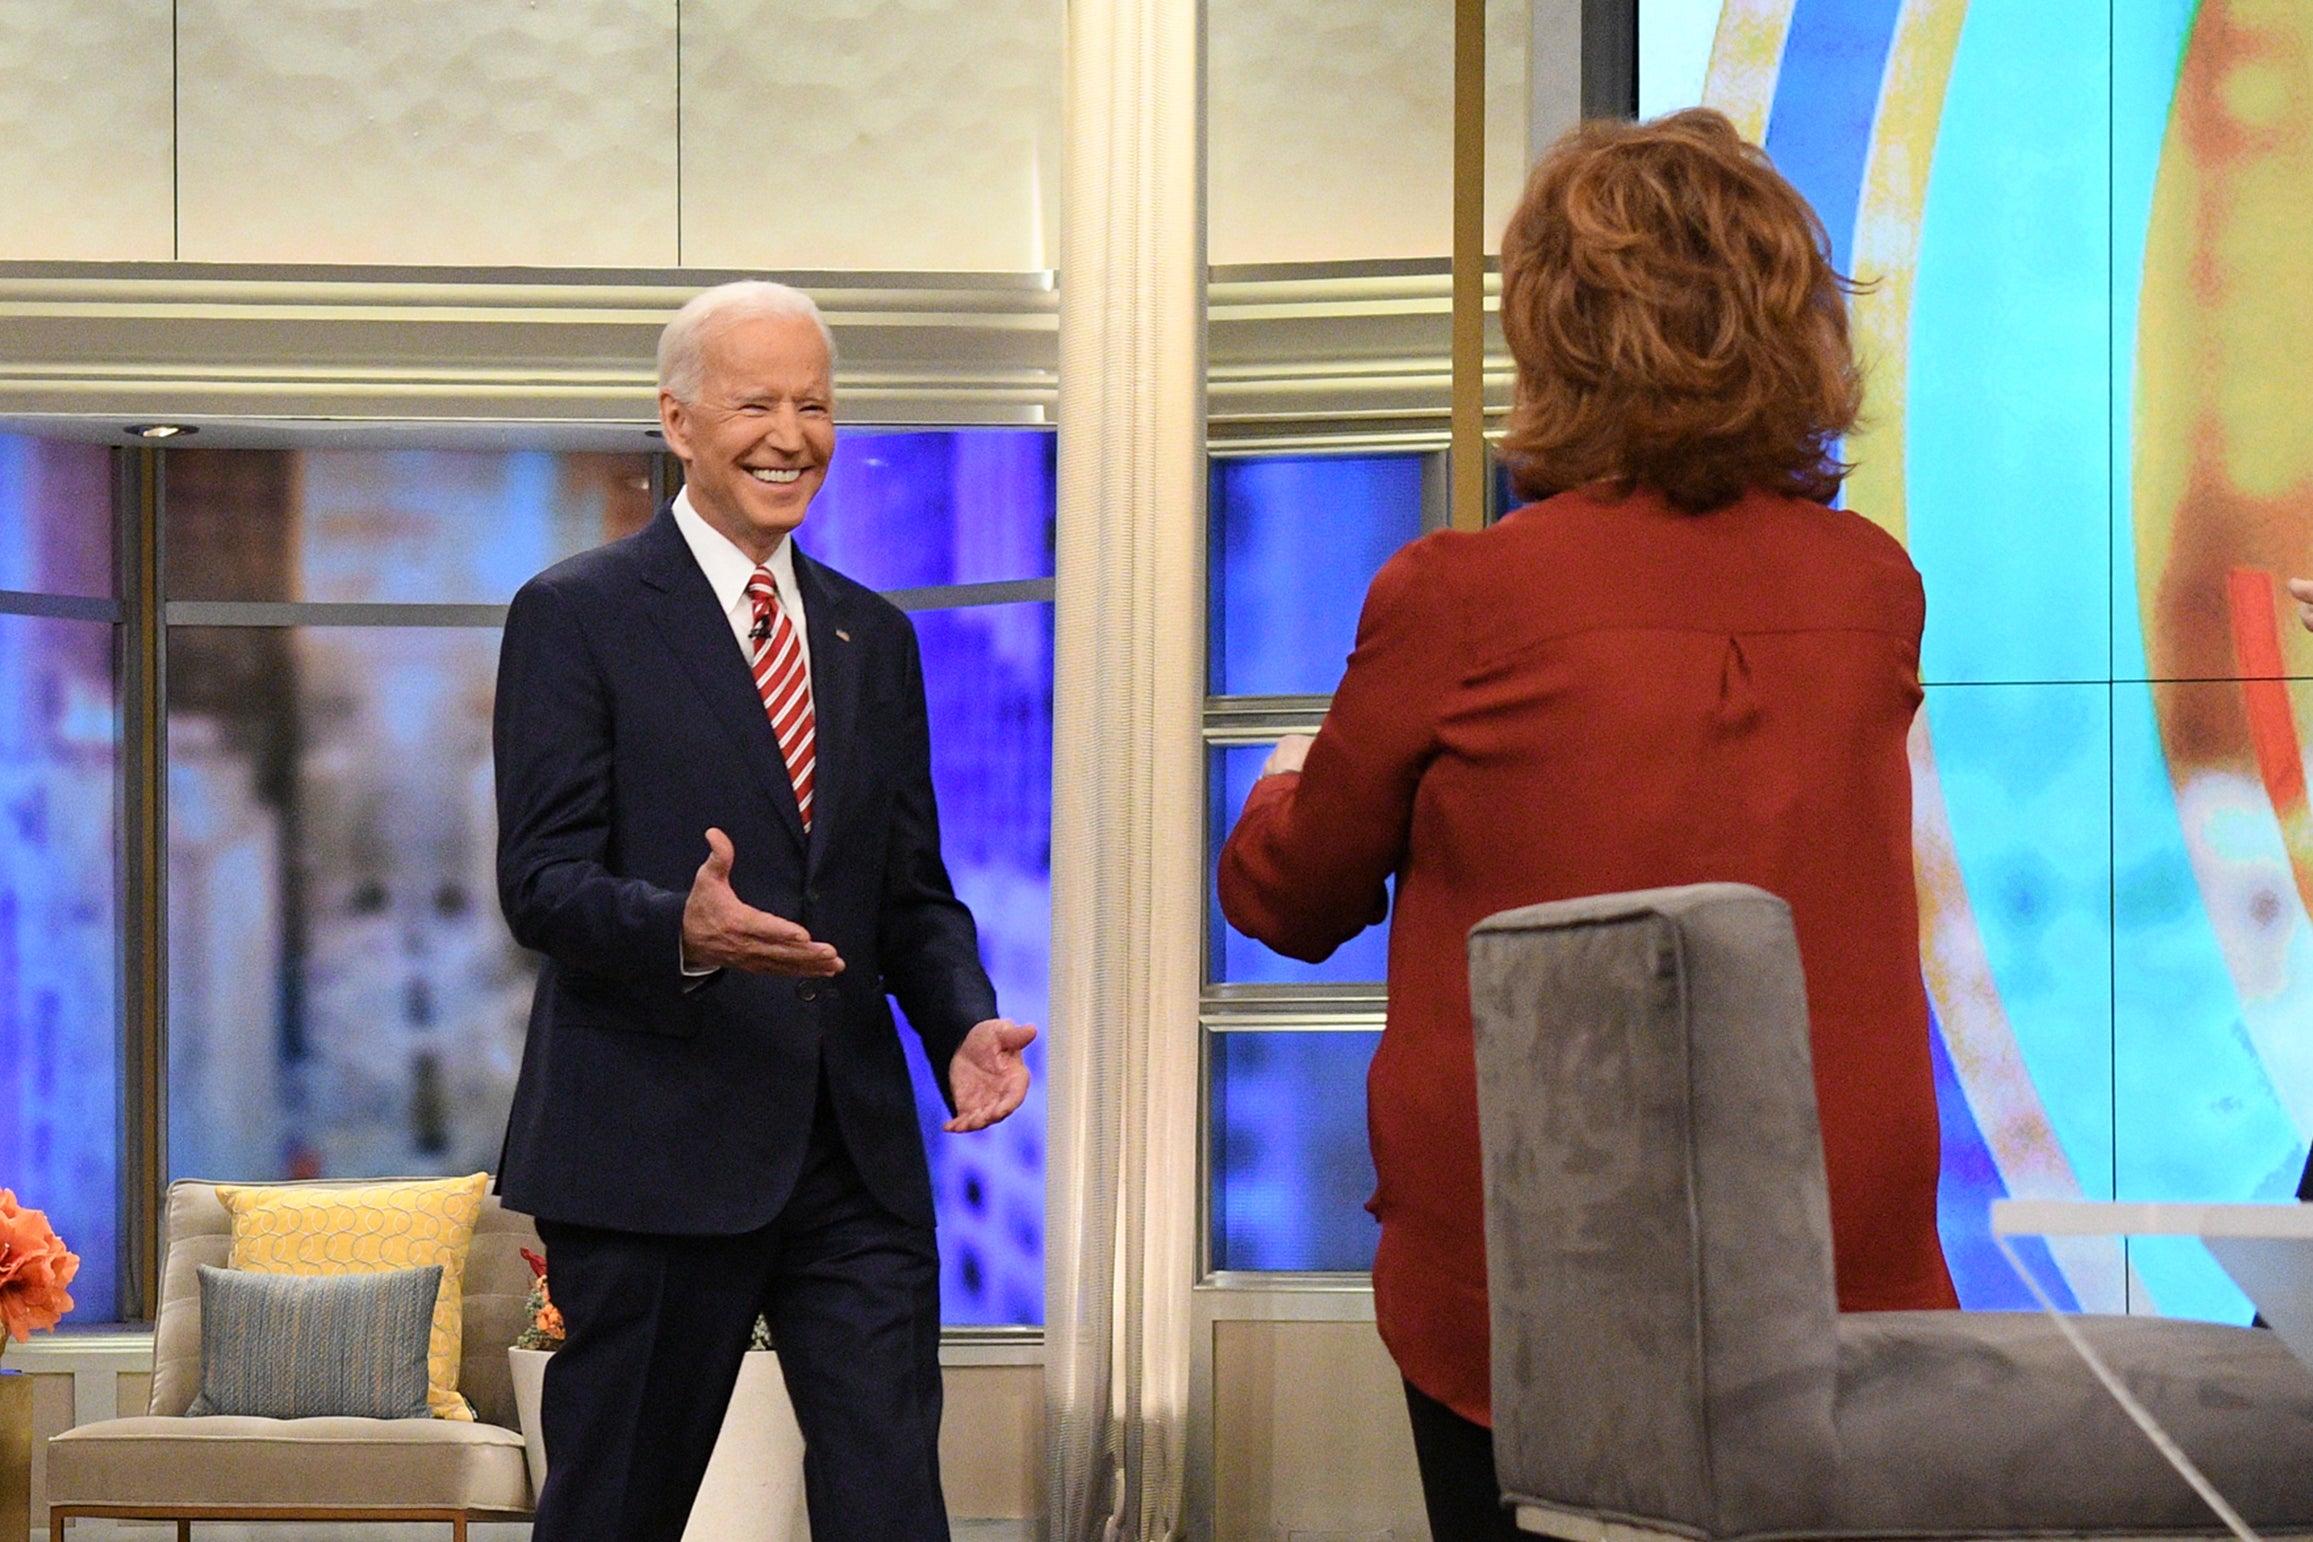 Joe Biden is greeted by Joy Behar as he walks on set on ABC's The View.